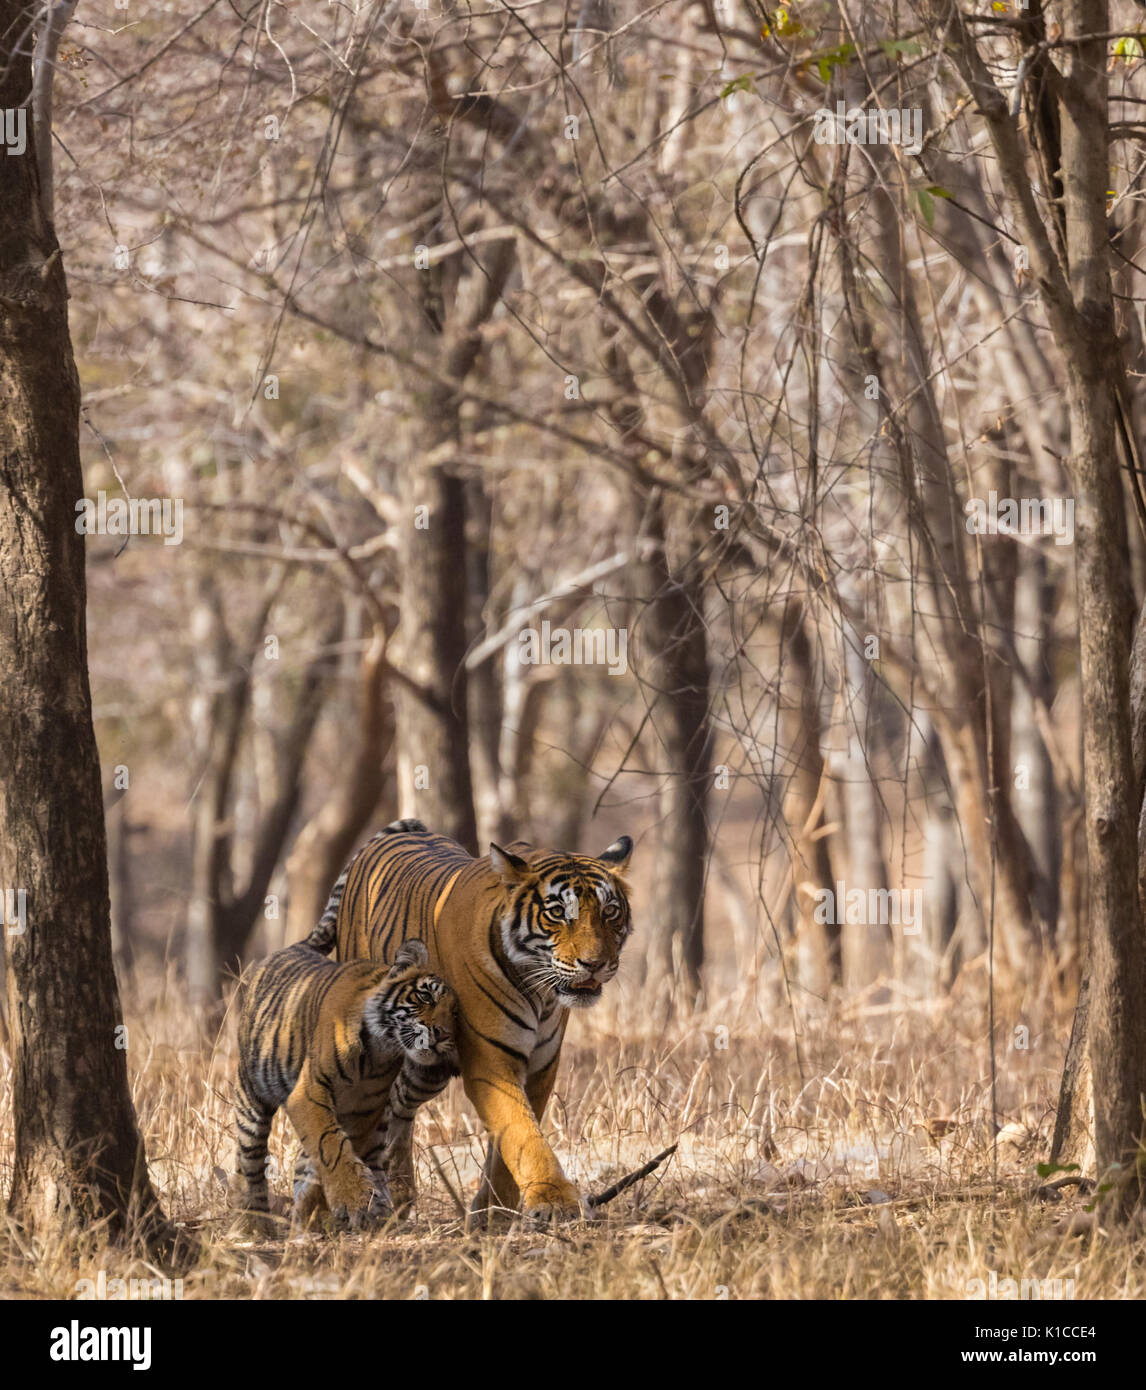 Junger Tiger kuscheln Mutter Tigerin in einem wunderschönen vertikalen Rahmen gebildet durch trockene treeline Stockfoto